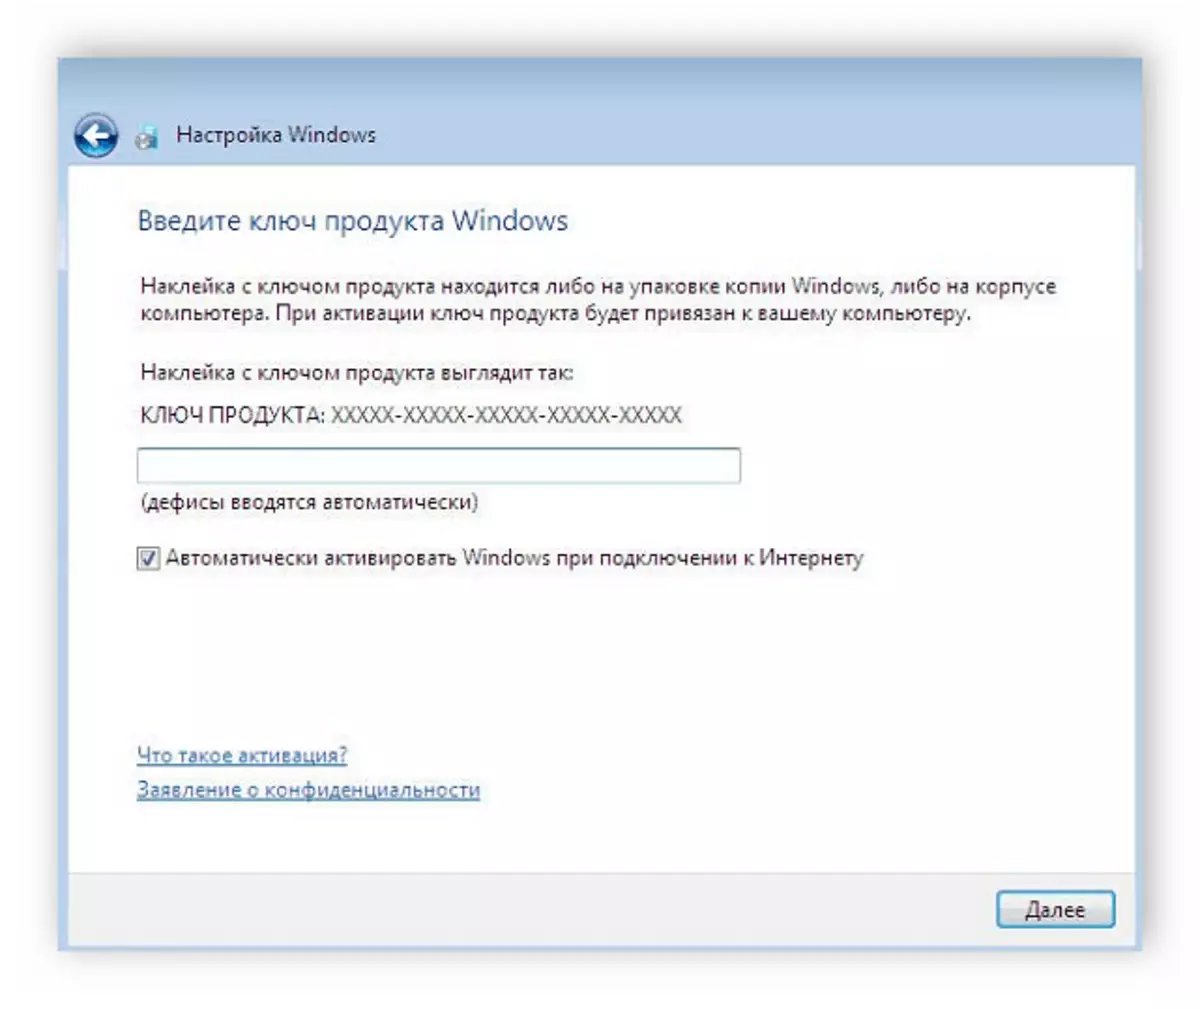 輸入鍵以激活Windows 7